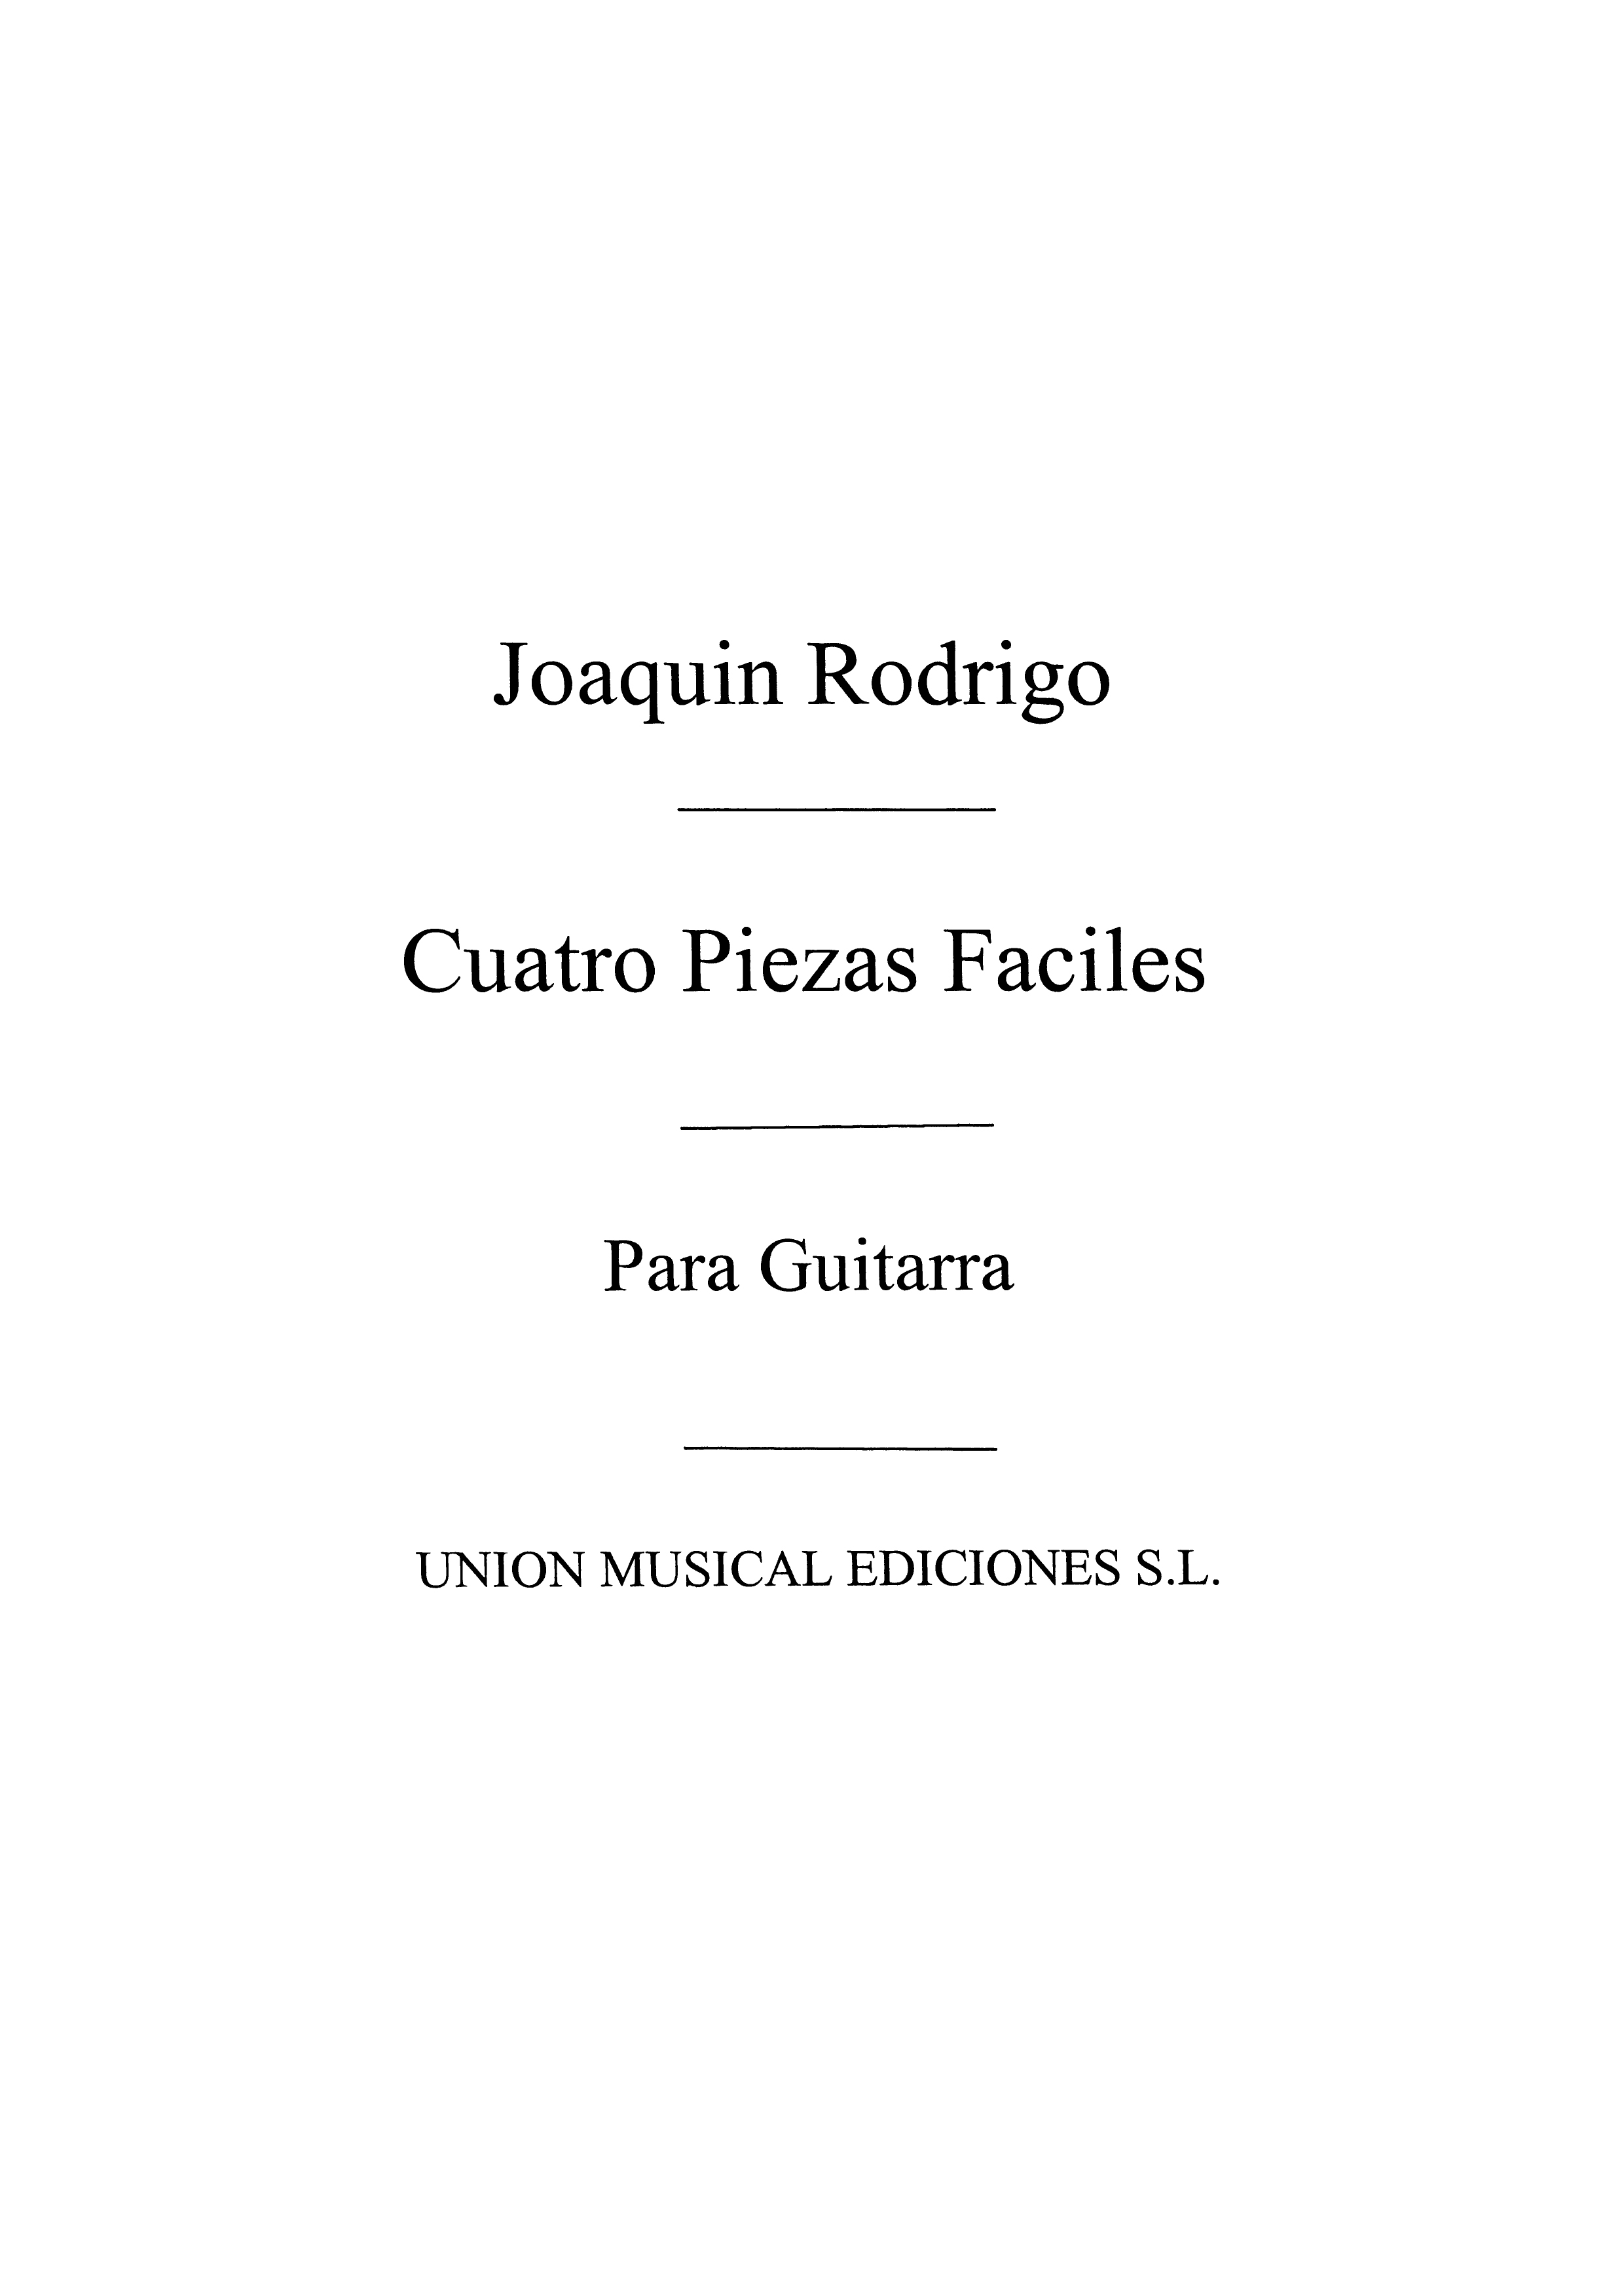 Joaqun Rodrigo: Cuatro Piezas Faciles Del Album De Cecilia: Guitar: